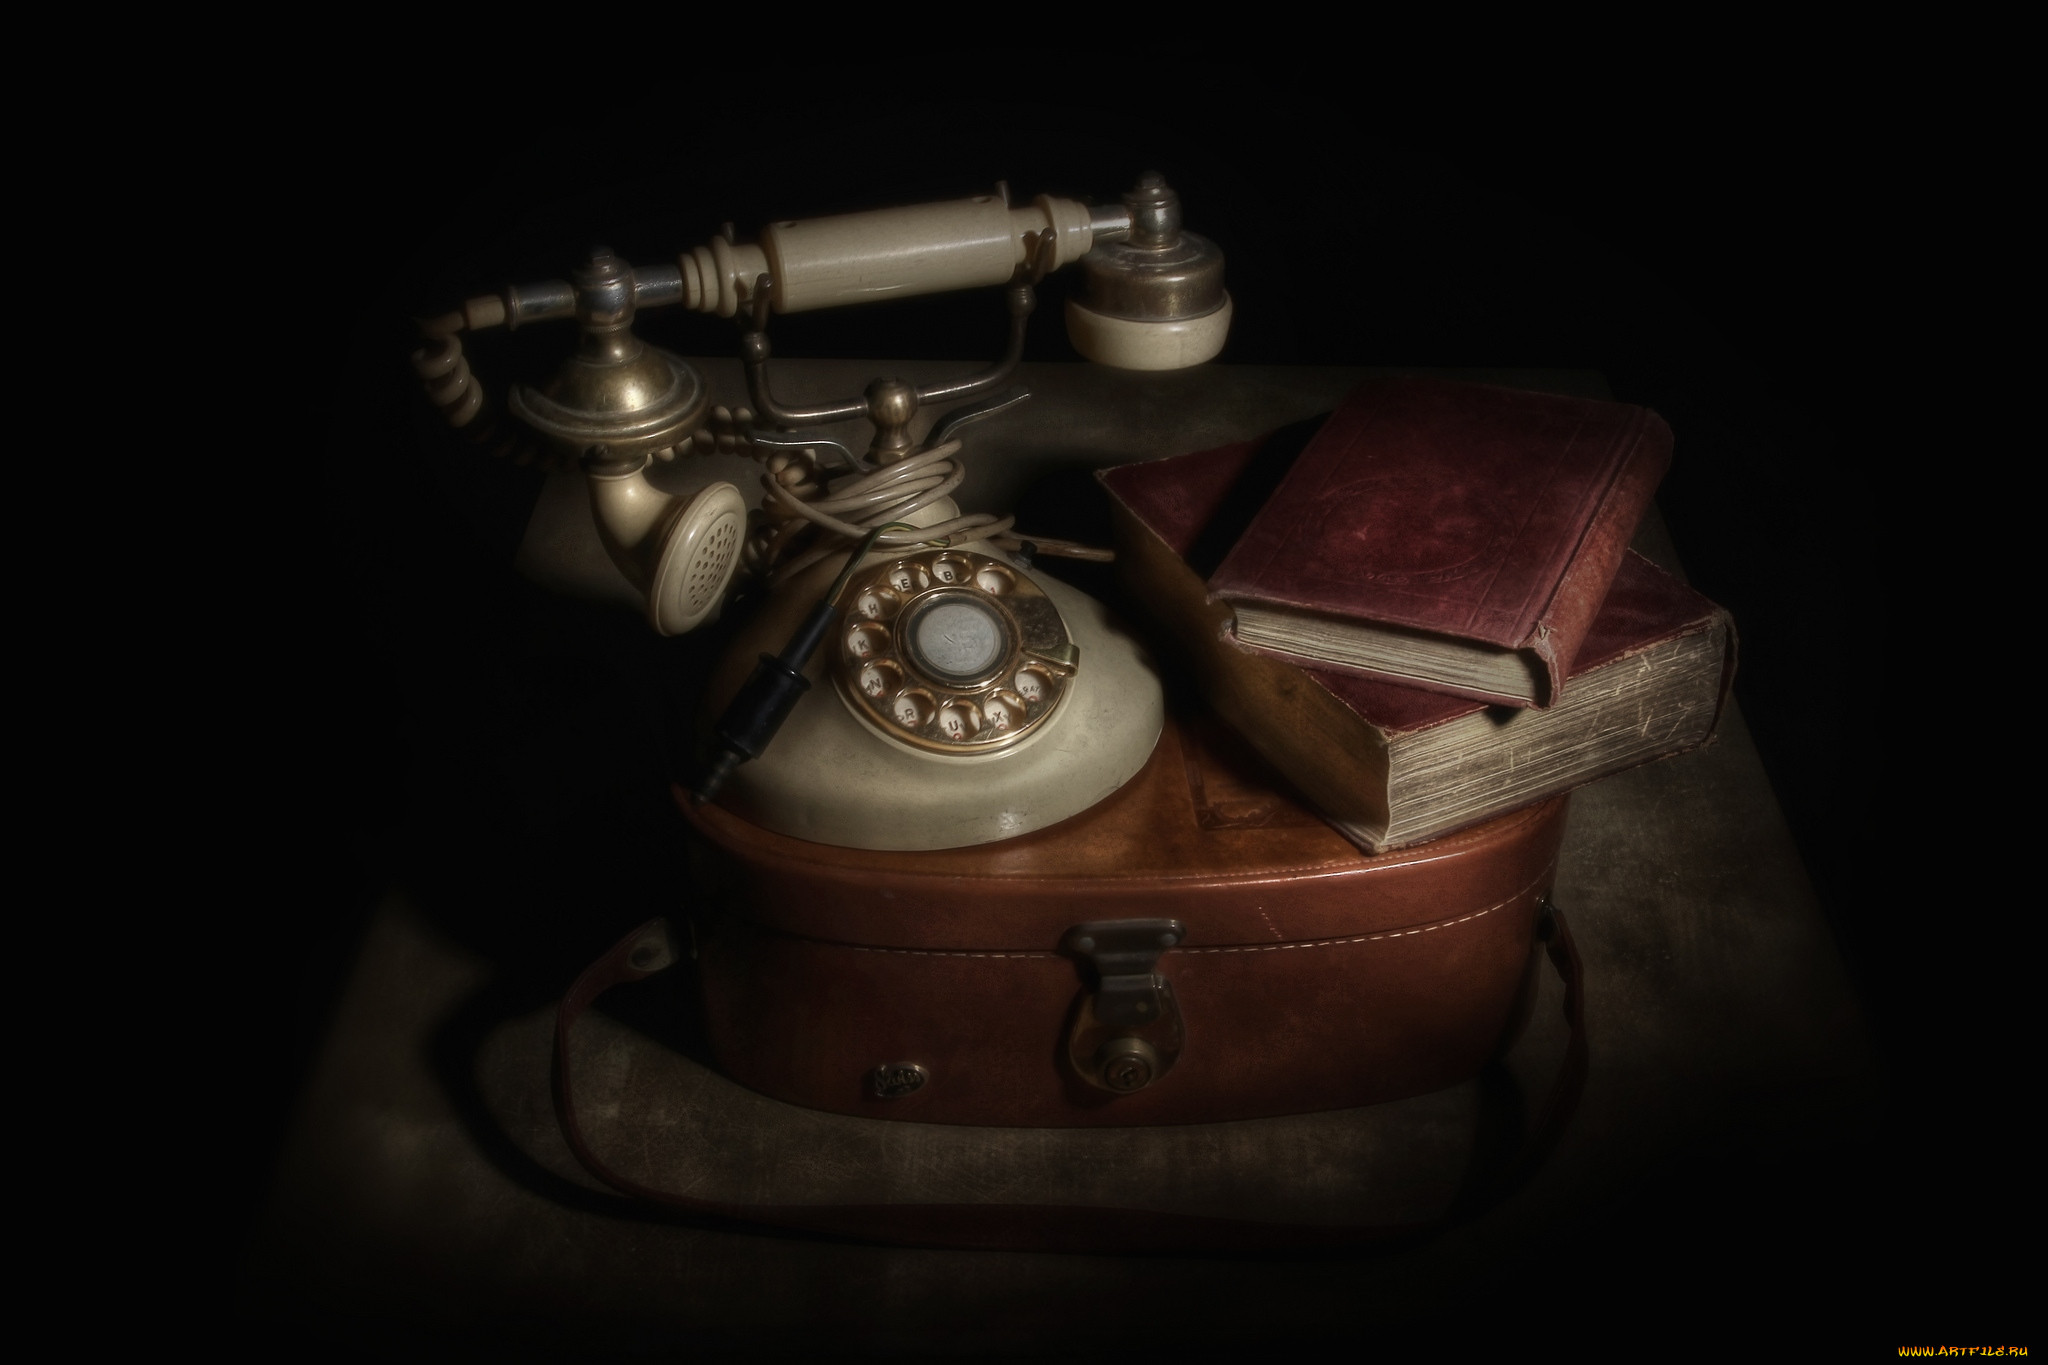 Телефон про фон. Старинный телефон. Старый телефонный аппарат. Ретро предметы. Антиквариат на черном фоне.